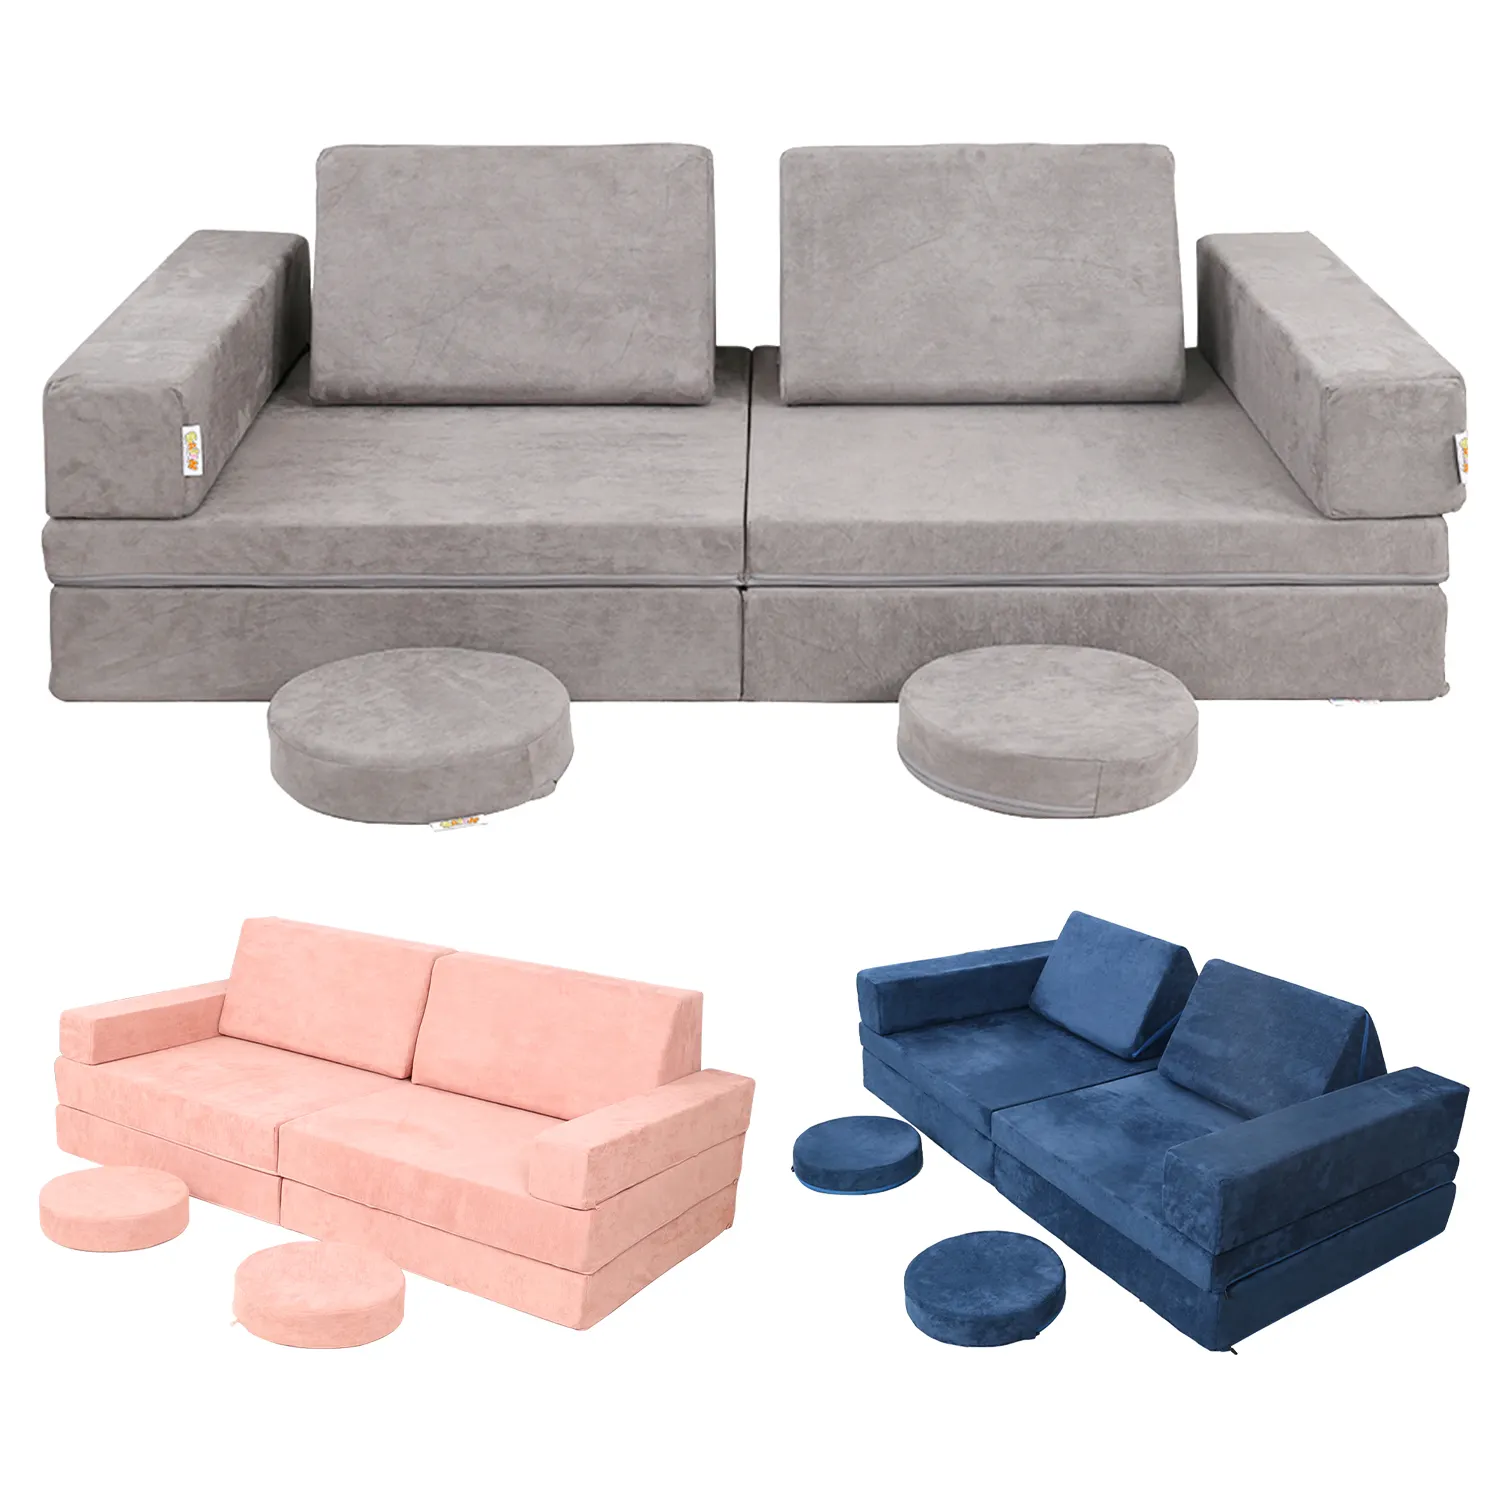 Eltern-Kind-Sofa Nugget- Couch modernes Spielzimmer Kindersofa mit Certipur-us Schaumstoff Sicherheit Kinder Weichspielcouch